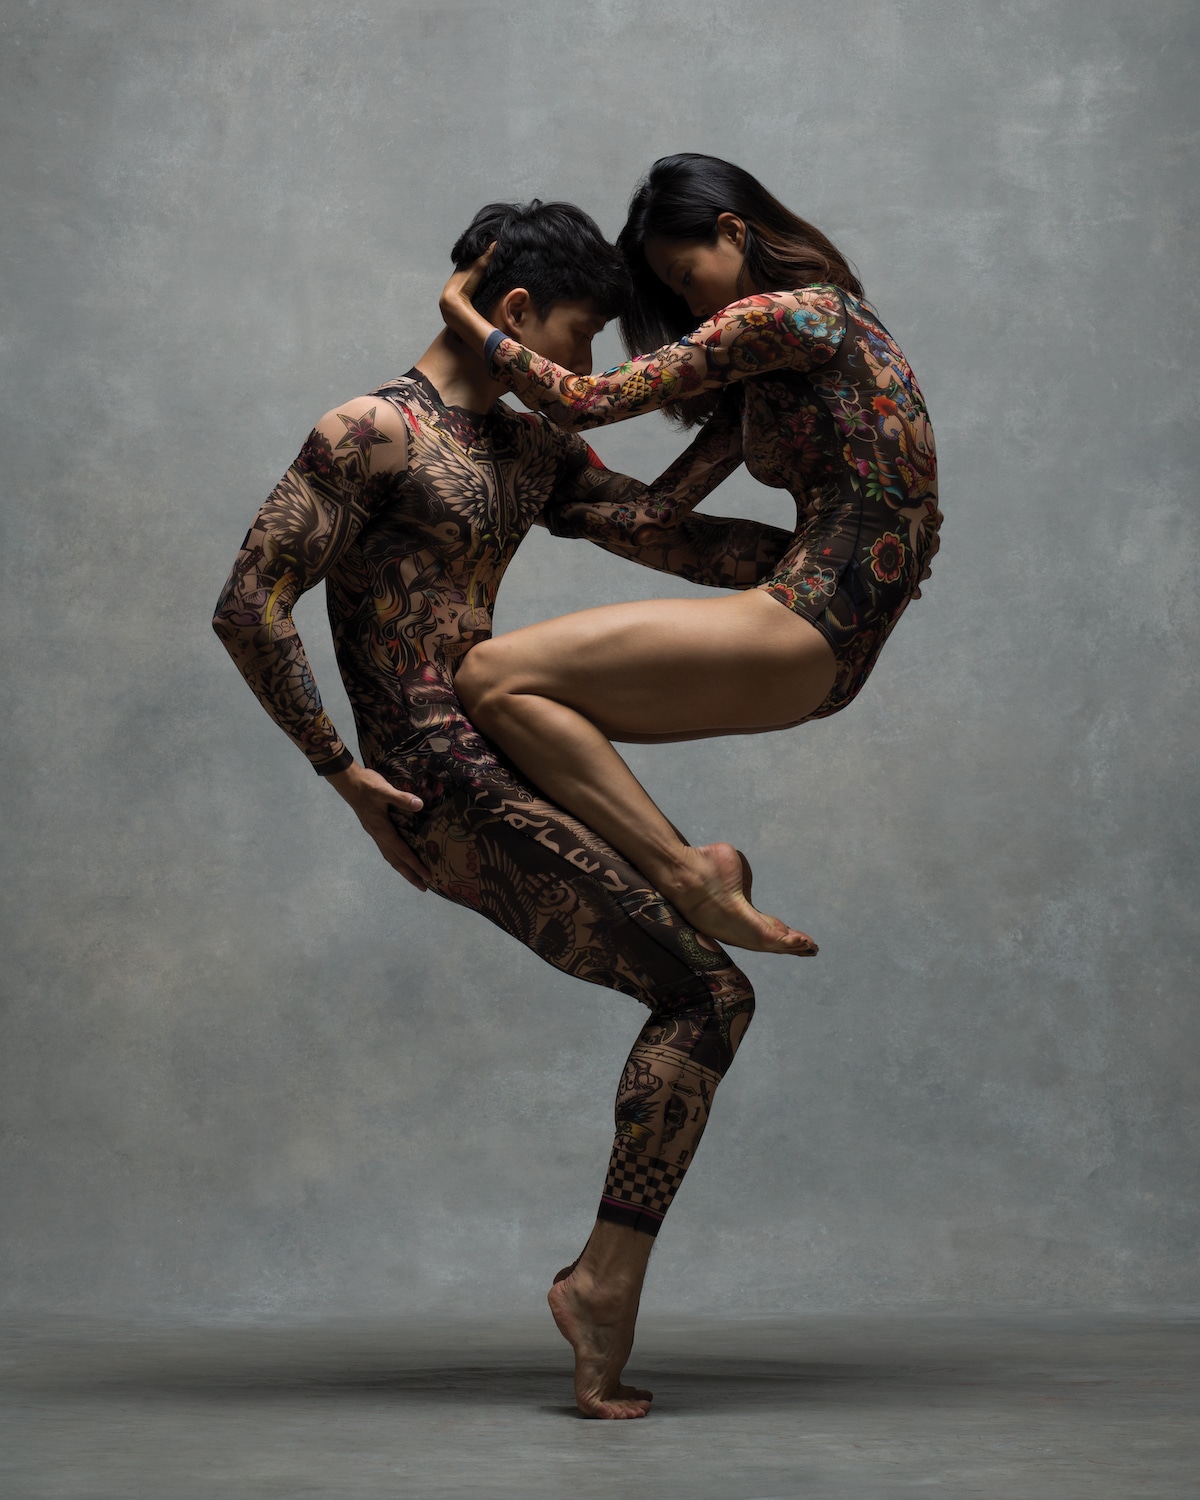 Fotos artísticas de bailarines de ballet